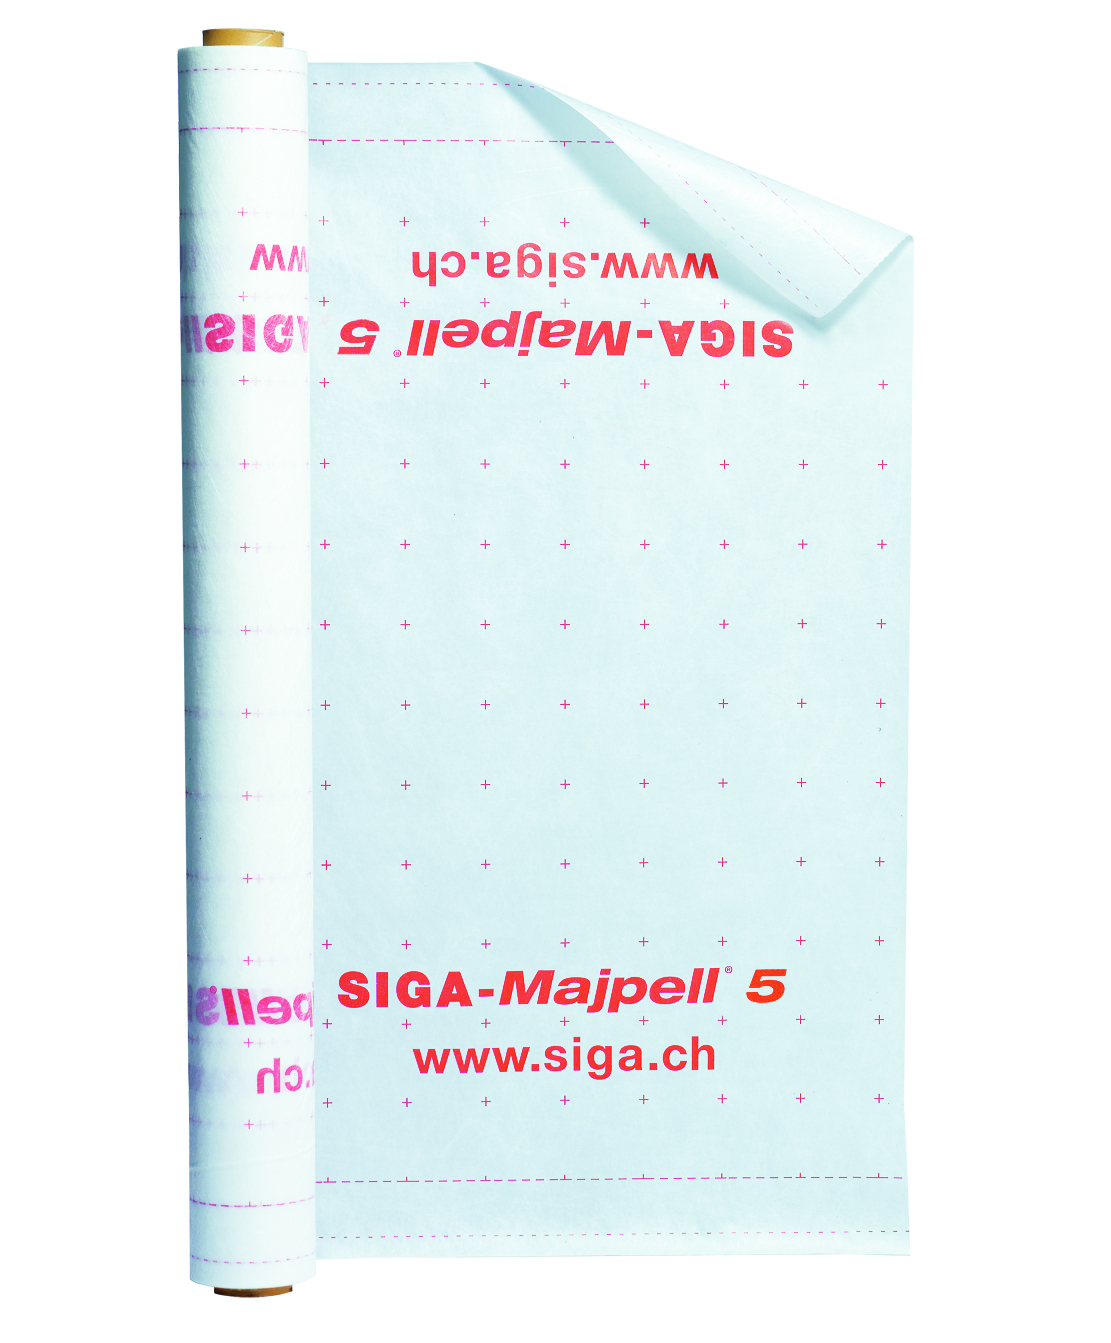 SIGA Majpell5 Dampfbremsfolie Dampfbremse Dampfsperre 1 Rolle 75m² 1,5 m x 50m